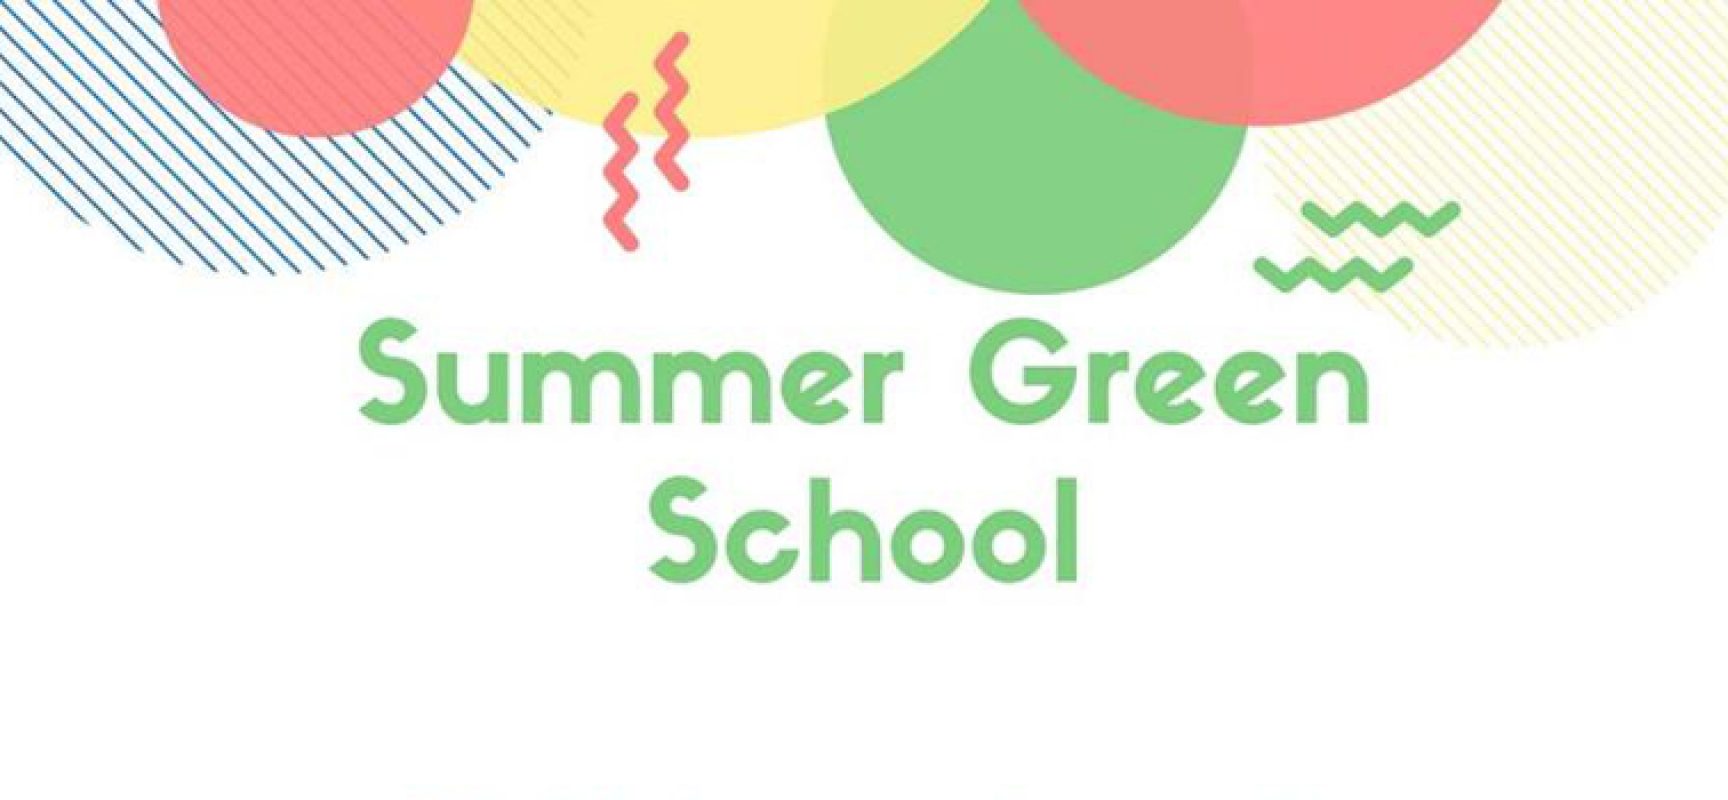 “Summer green school”, incontri e laboratori ludici per insegnare la raccolta differenziata ai più piccoli